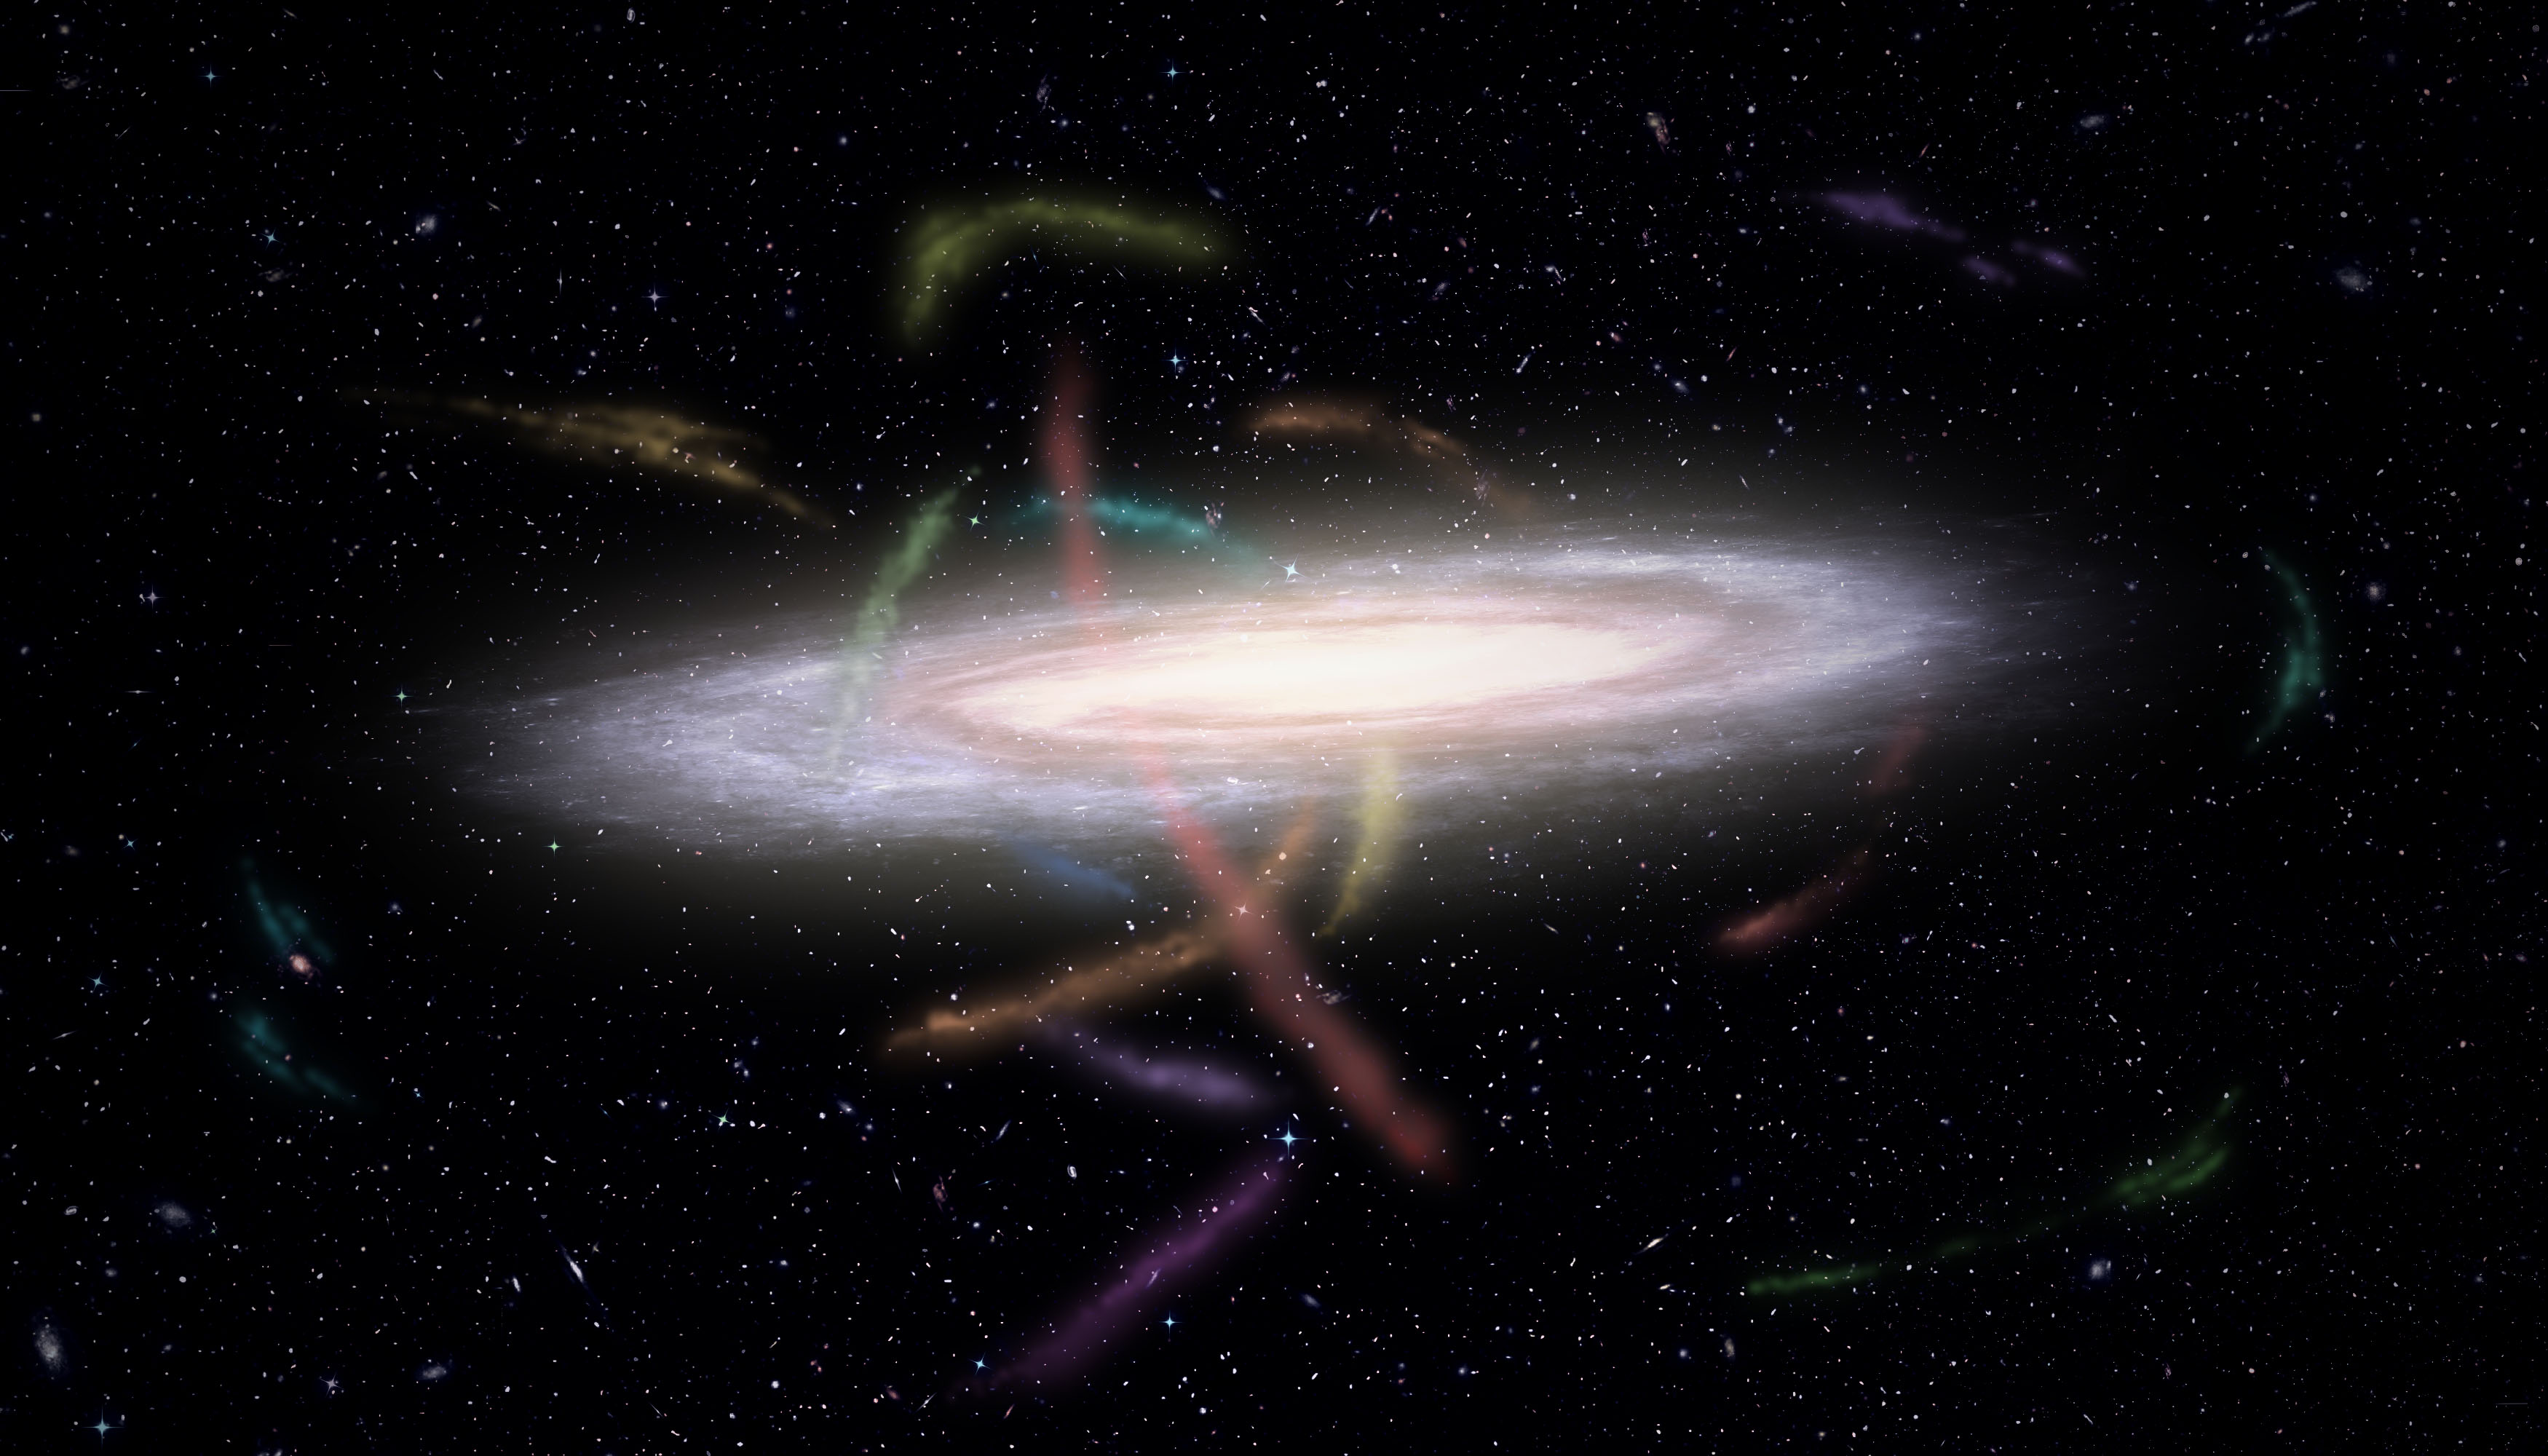 Umělecké zobrazení naší Galaxie obklopené desítkami hvězdných proudů. Jsou pozůstatky satelitních malých galaxií a kulových hvězdokup, které roztrhala a formovala gravitace Mléčné dráhy, jež je postupně pohlcuje.  Kredit: James Josephides a projekt S